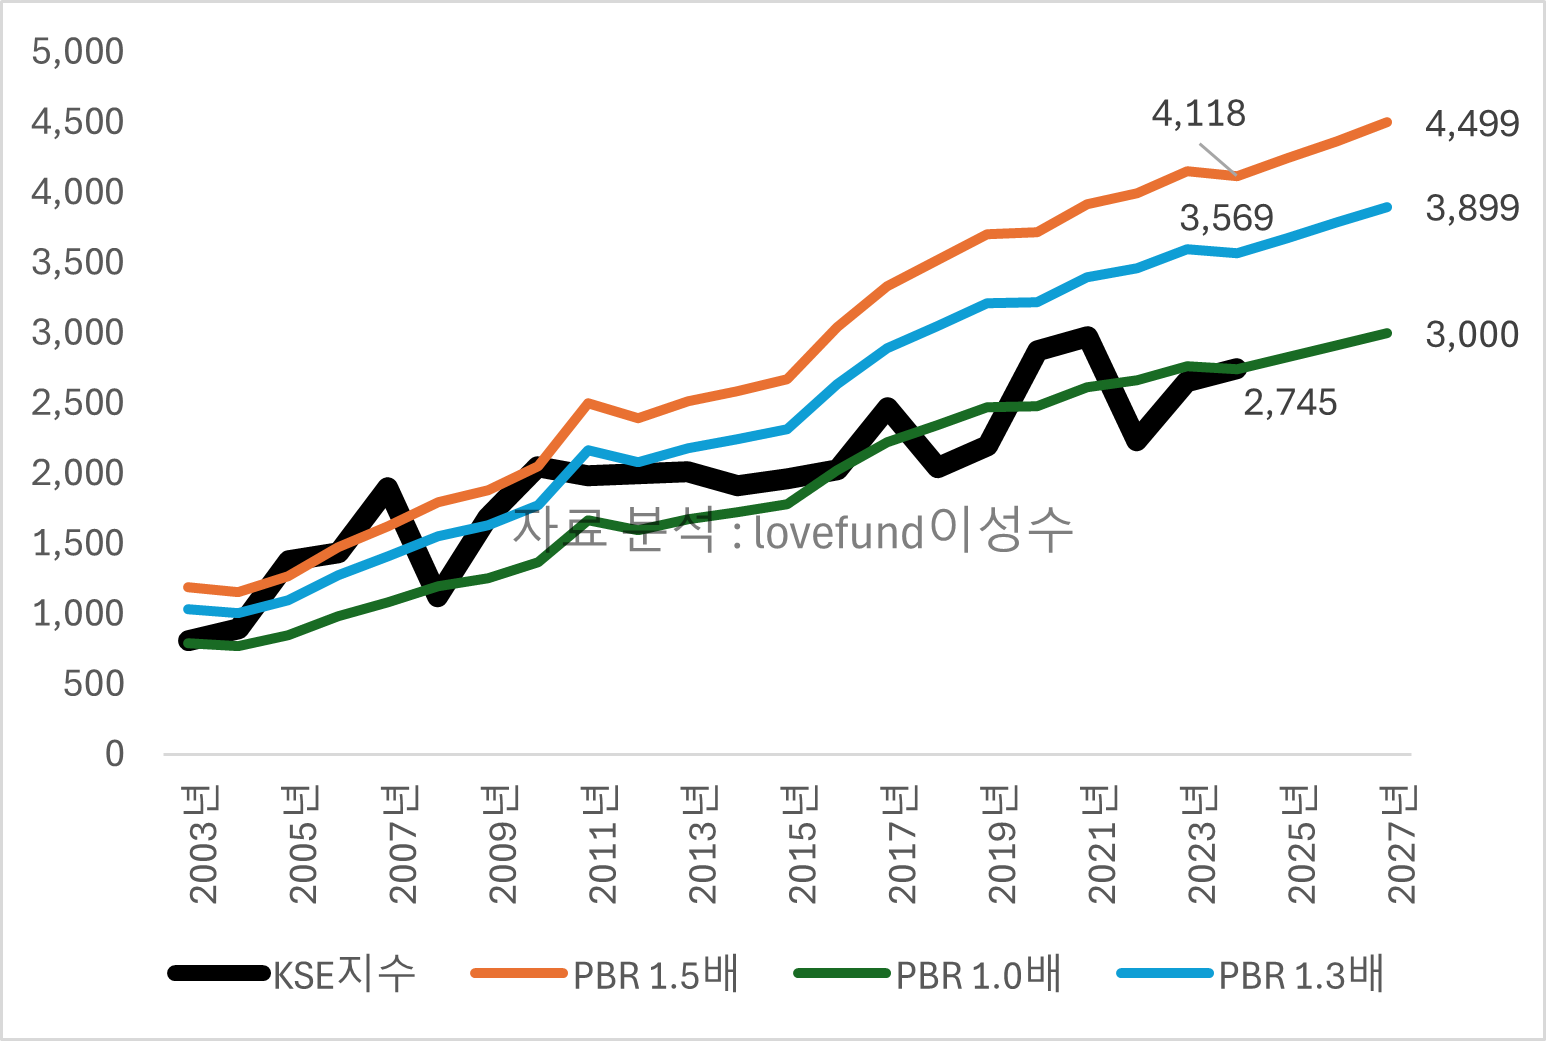 2003년 이후 코스피 지수와 PBR밴드 1배, 1.3배, 1.5배_추이, 자료분석 : lovefund이성수